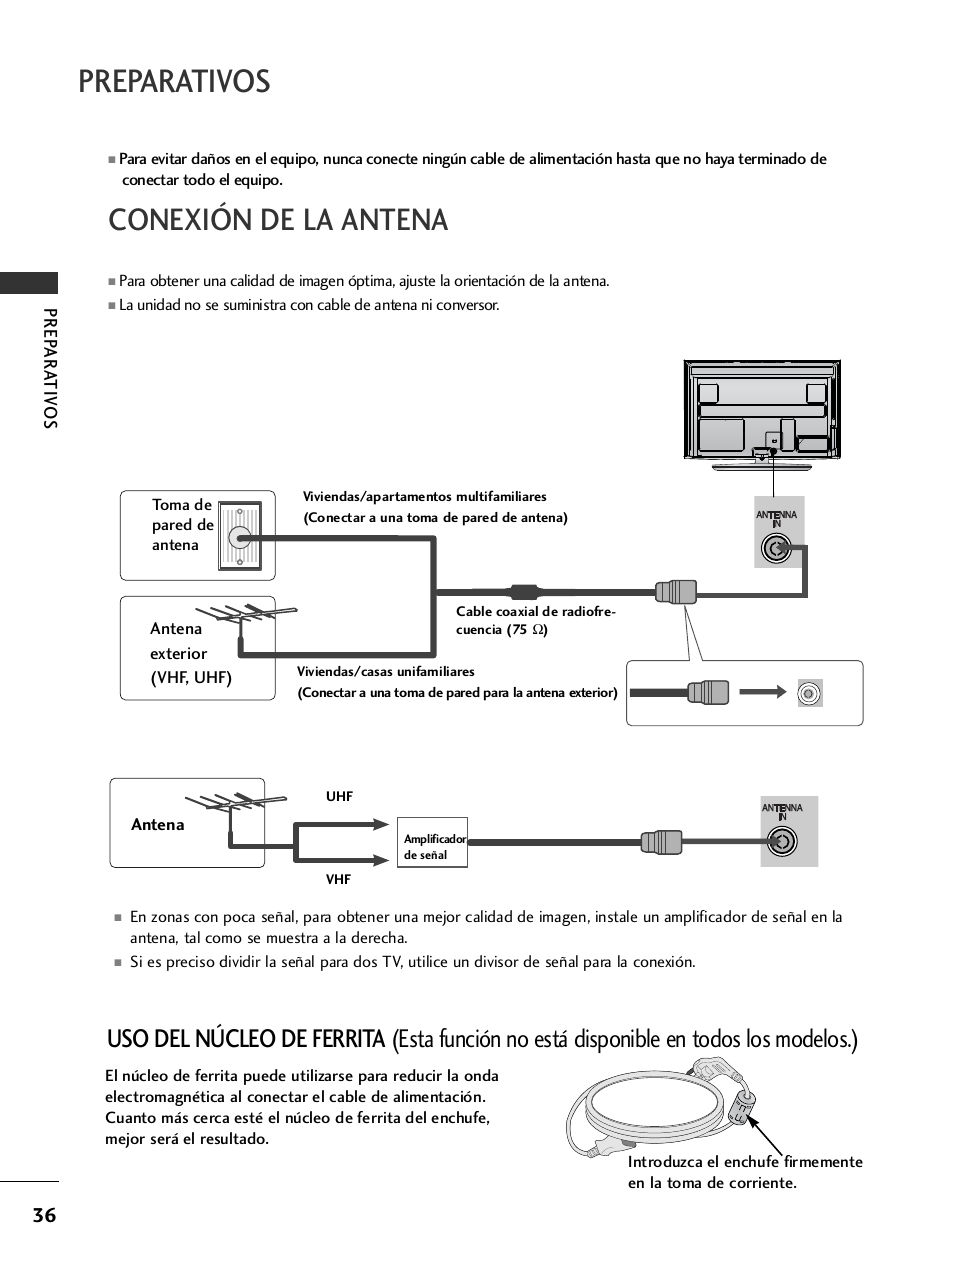 Conexión de la antena, Preparativos | LG 32LH40 Manual del usuario | Página 38 / 180